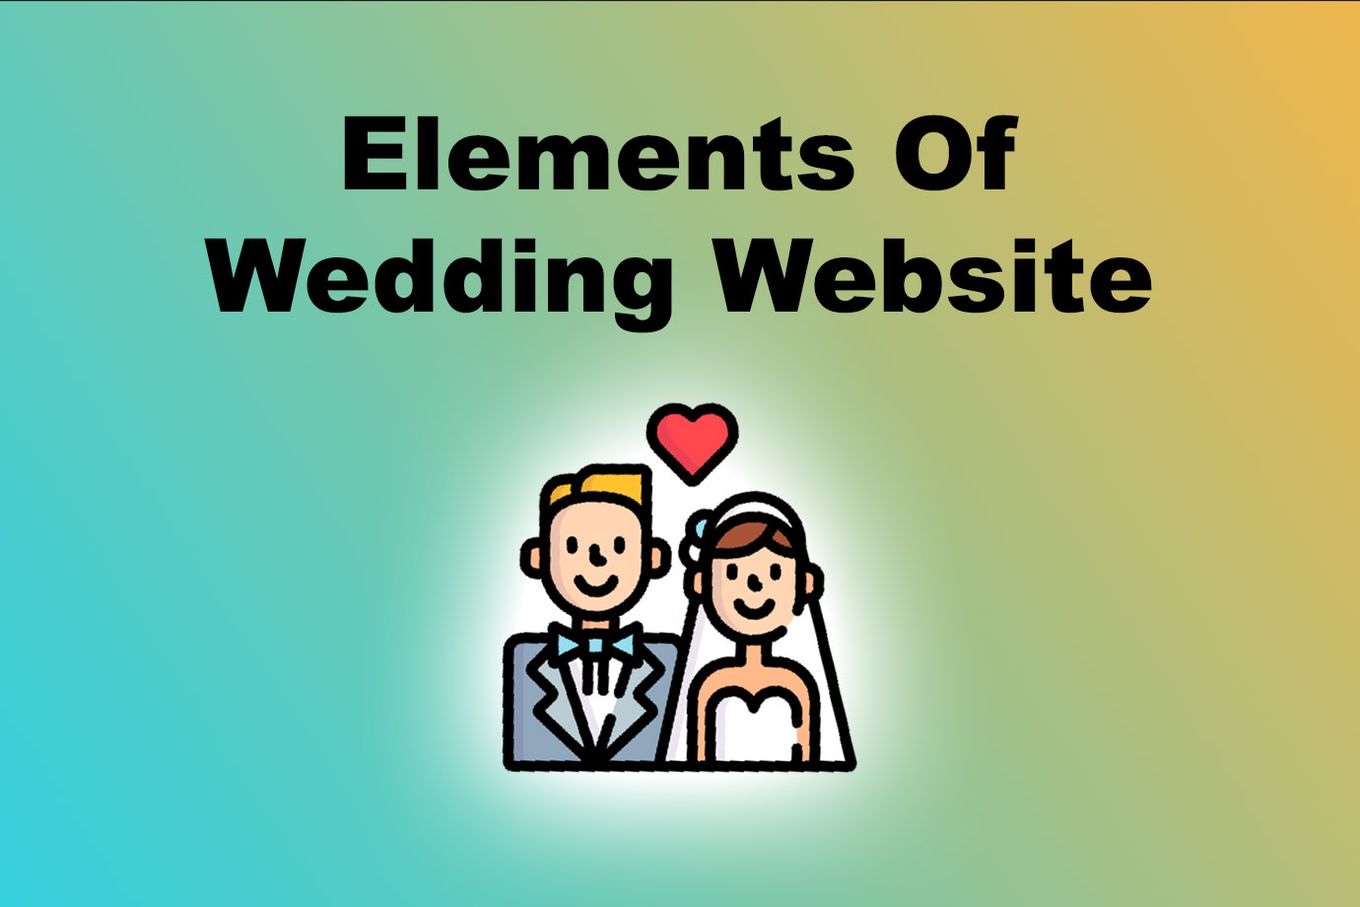 Elements of Wedding Website